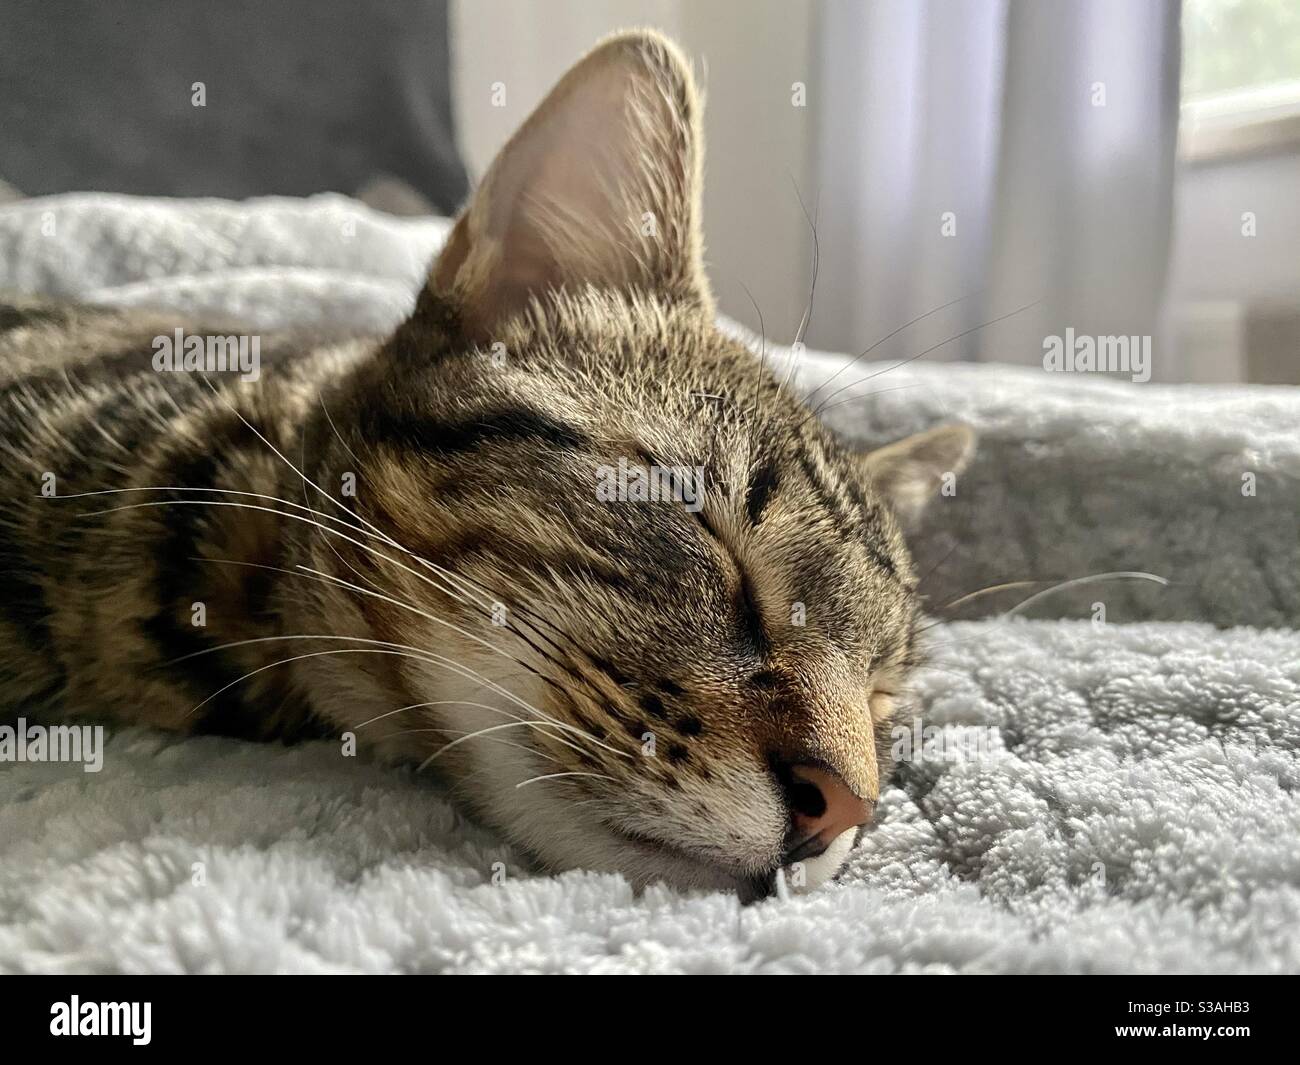 Sleeping kitten on a fluffy blanket Stock Photo